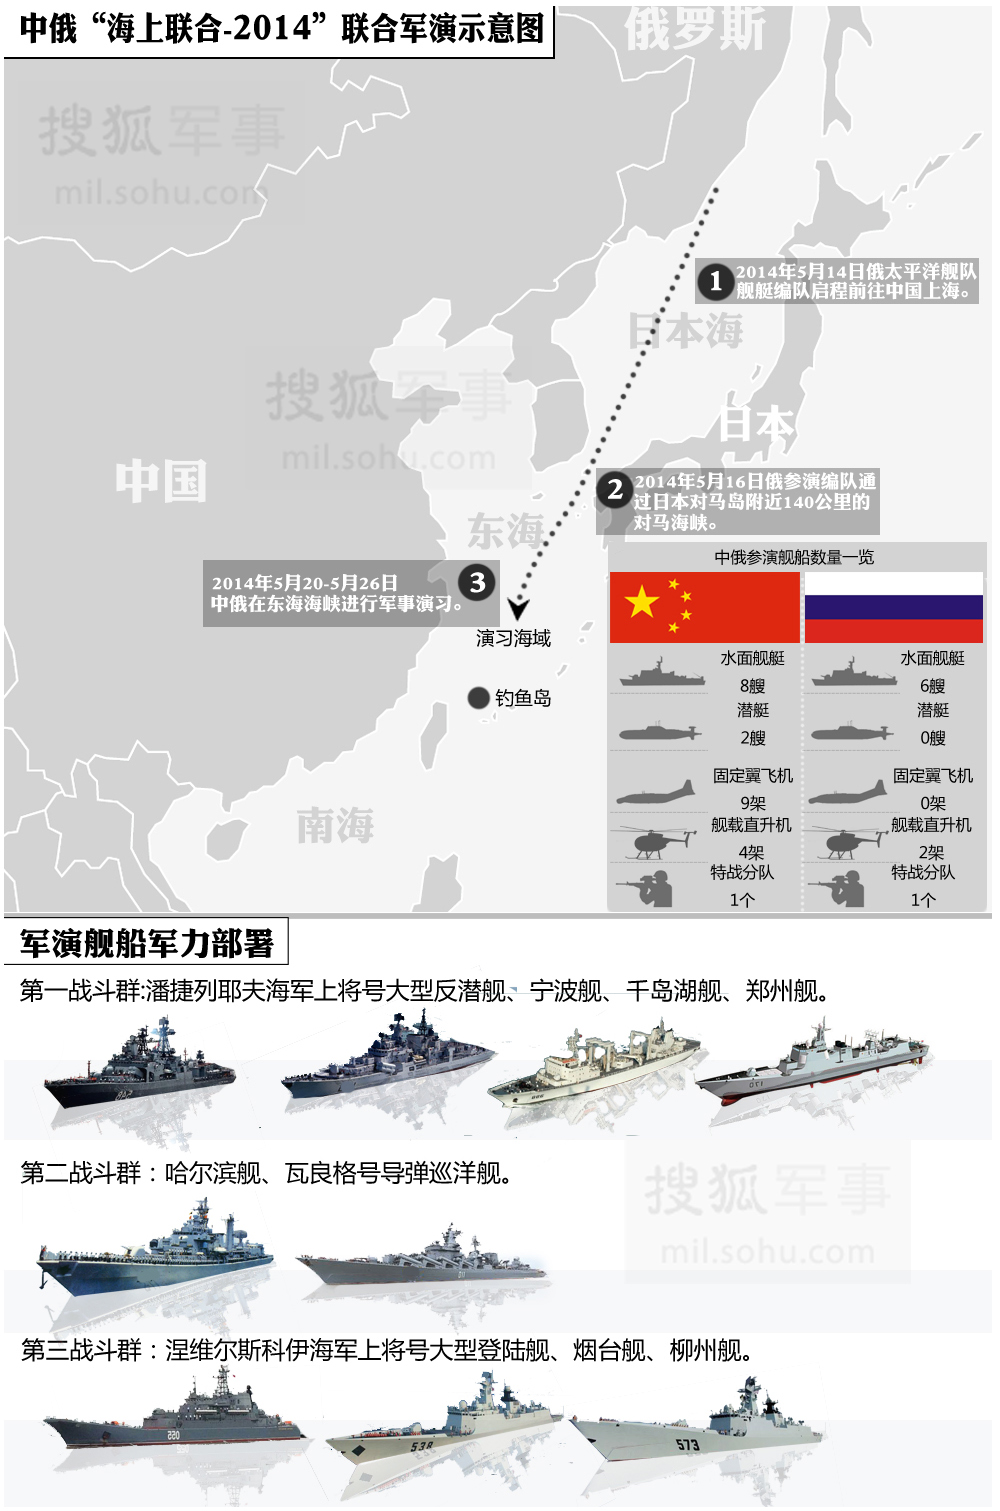 中俄“海上联合-2014”军演示意图